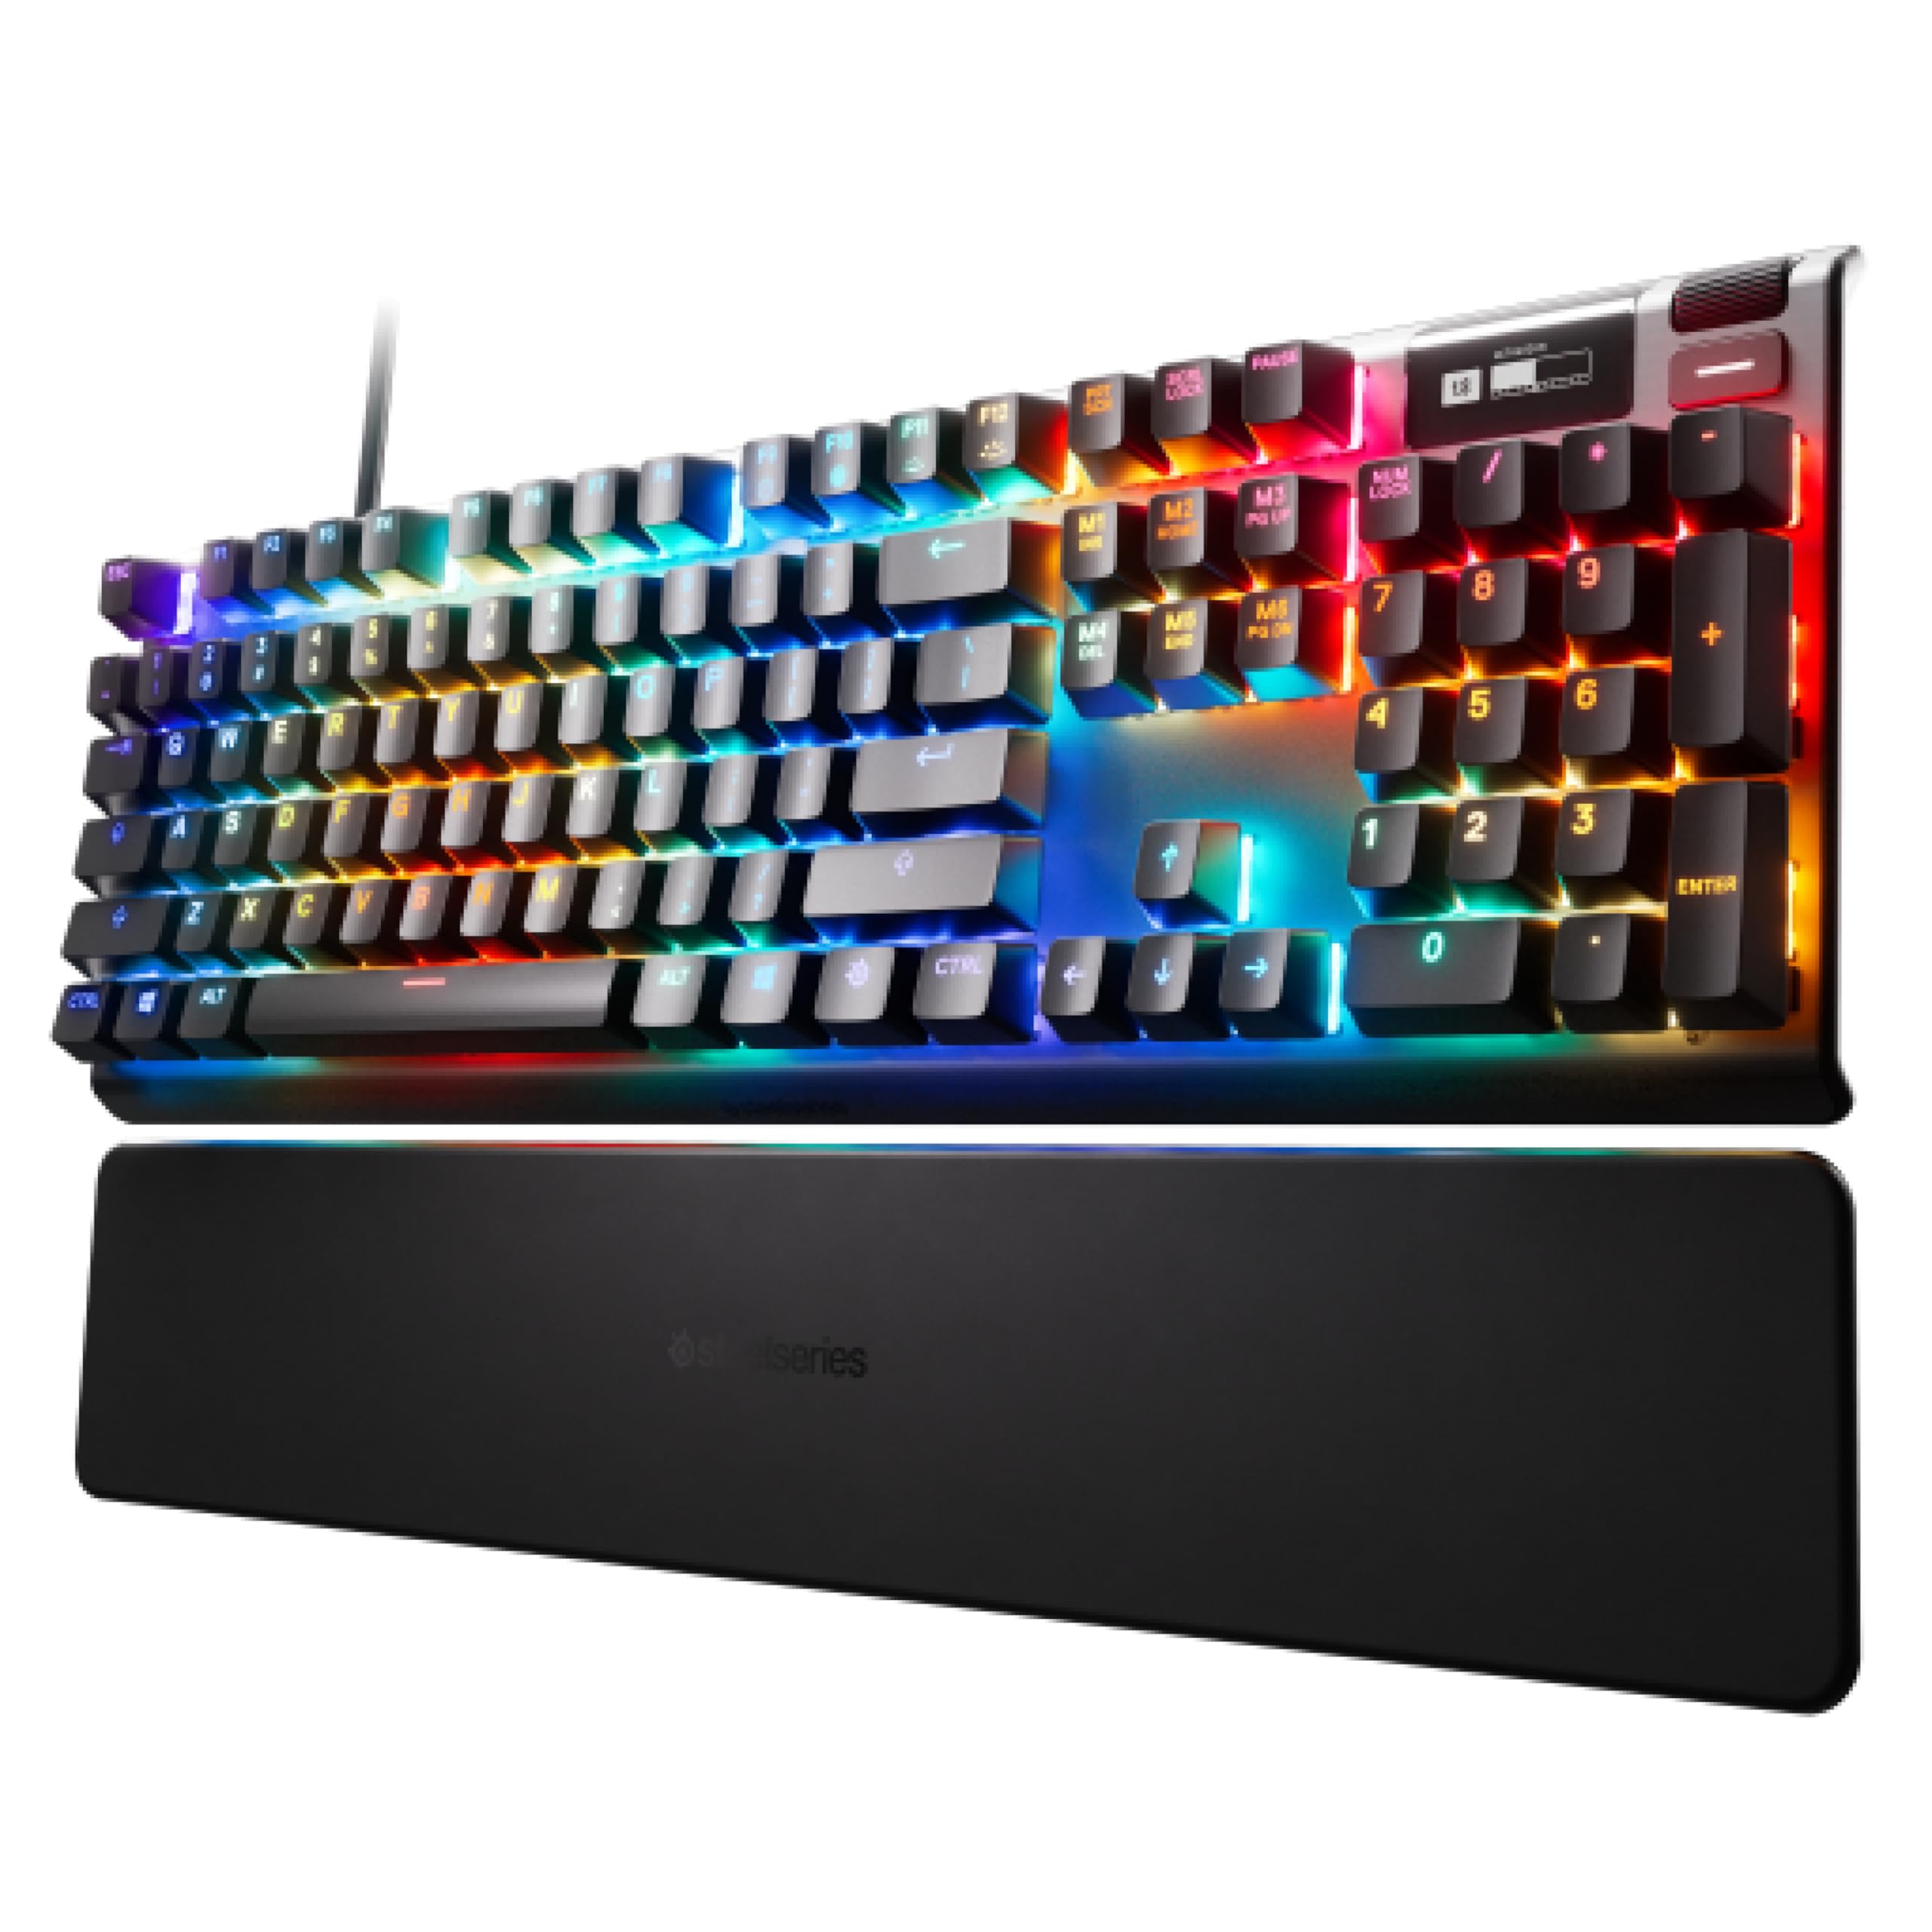 SteelSeries Apex Pro HyperMagnetic Gaming-Tastatur – Die schnellste Tastatur der Welt – Anpassbares Ansprechverhalten – OLED-Bildschirm – RGB – USB-Passthrough – Französisches Tastatur (AZERTY)